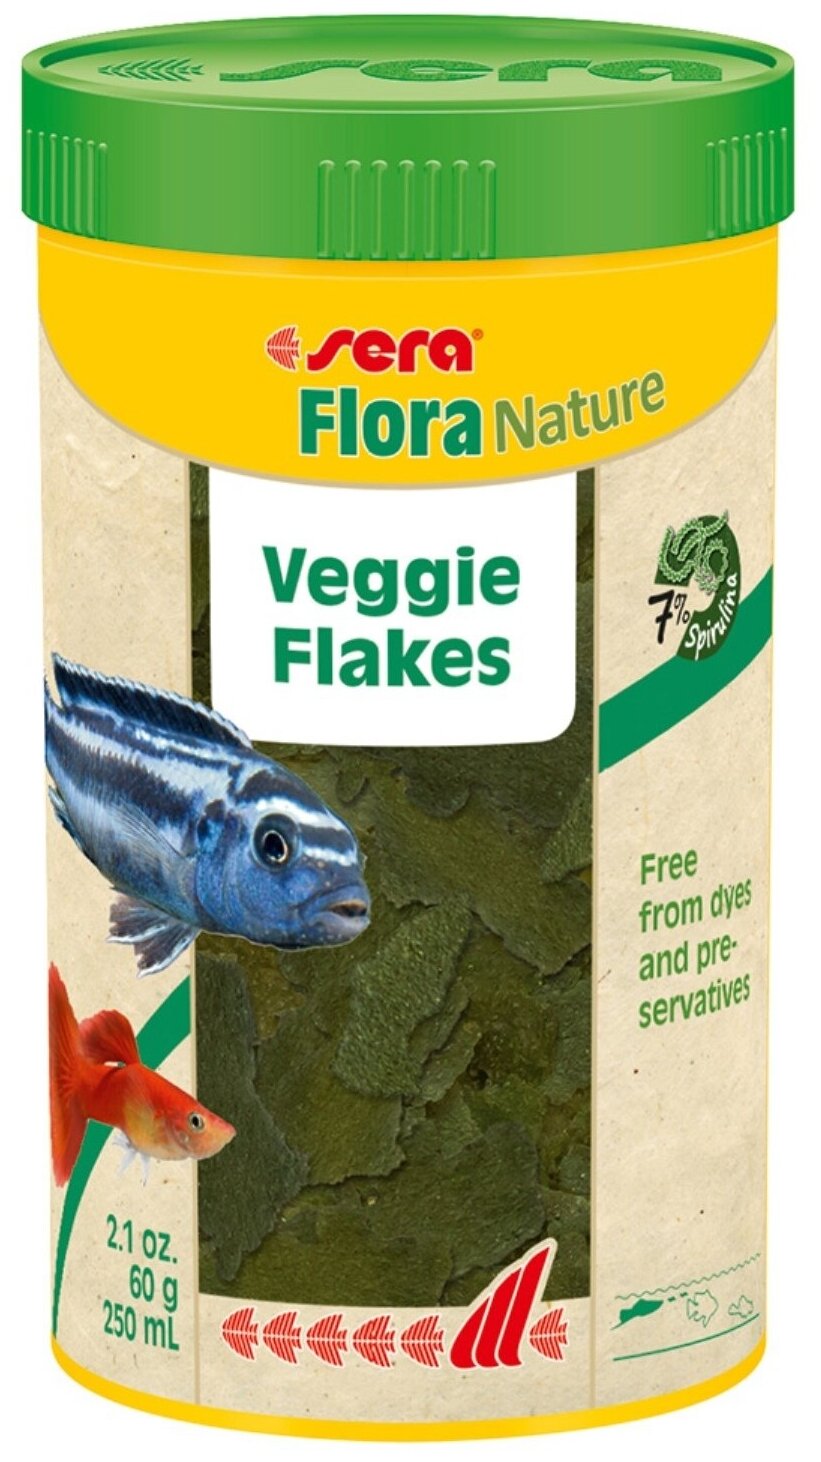 Корм для травоядных декоративных рыб Flora Nature растительный, в хлопьях, 250 мл, 60 гр